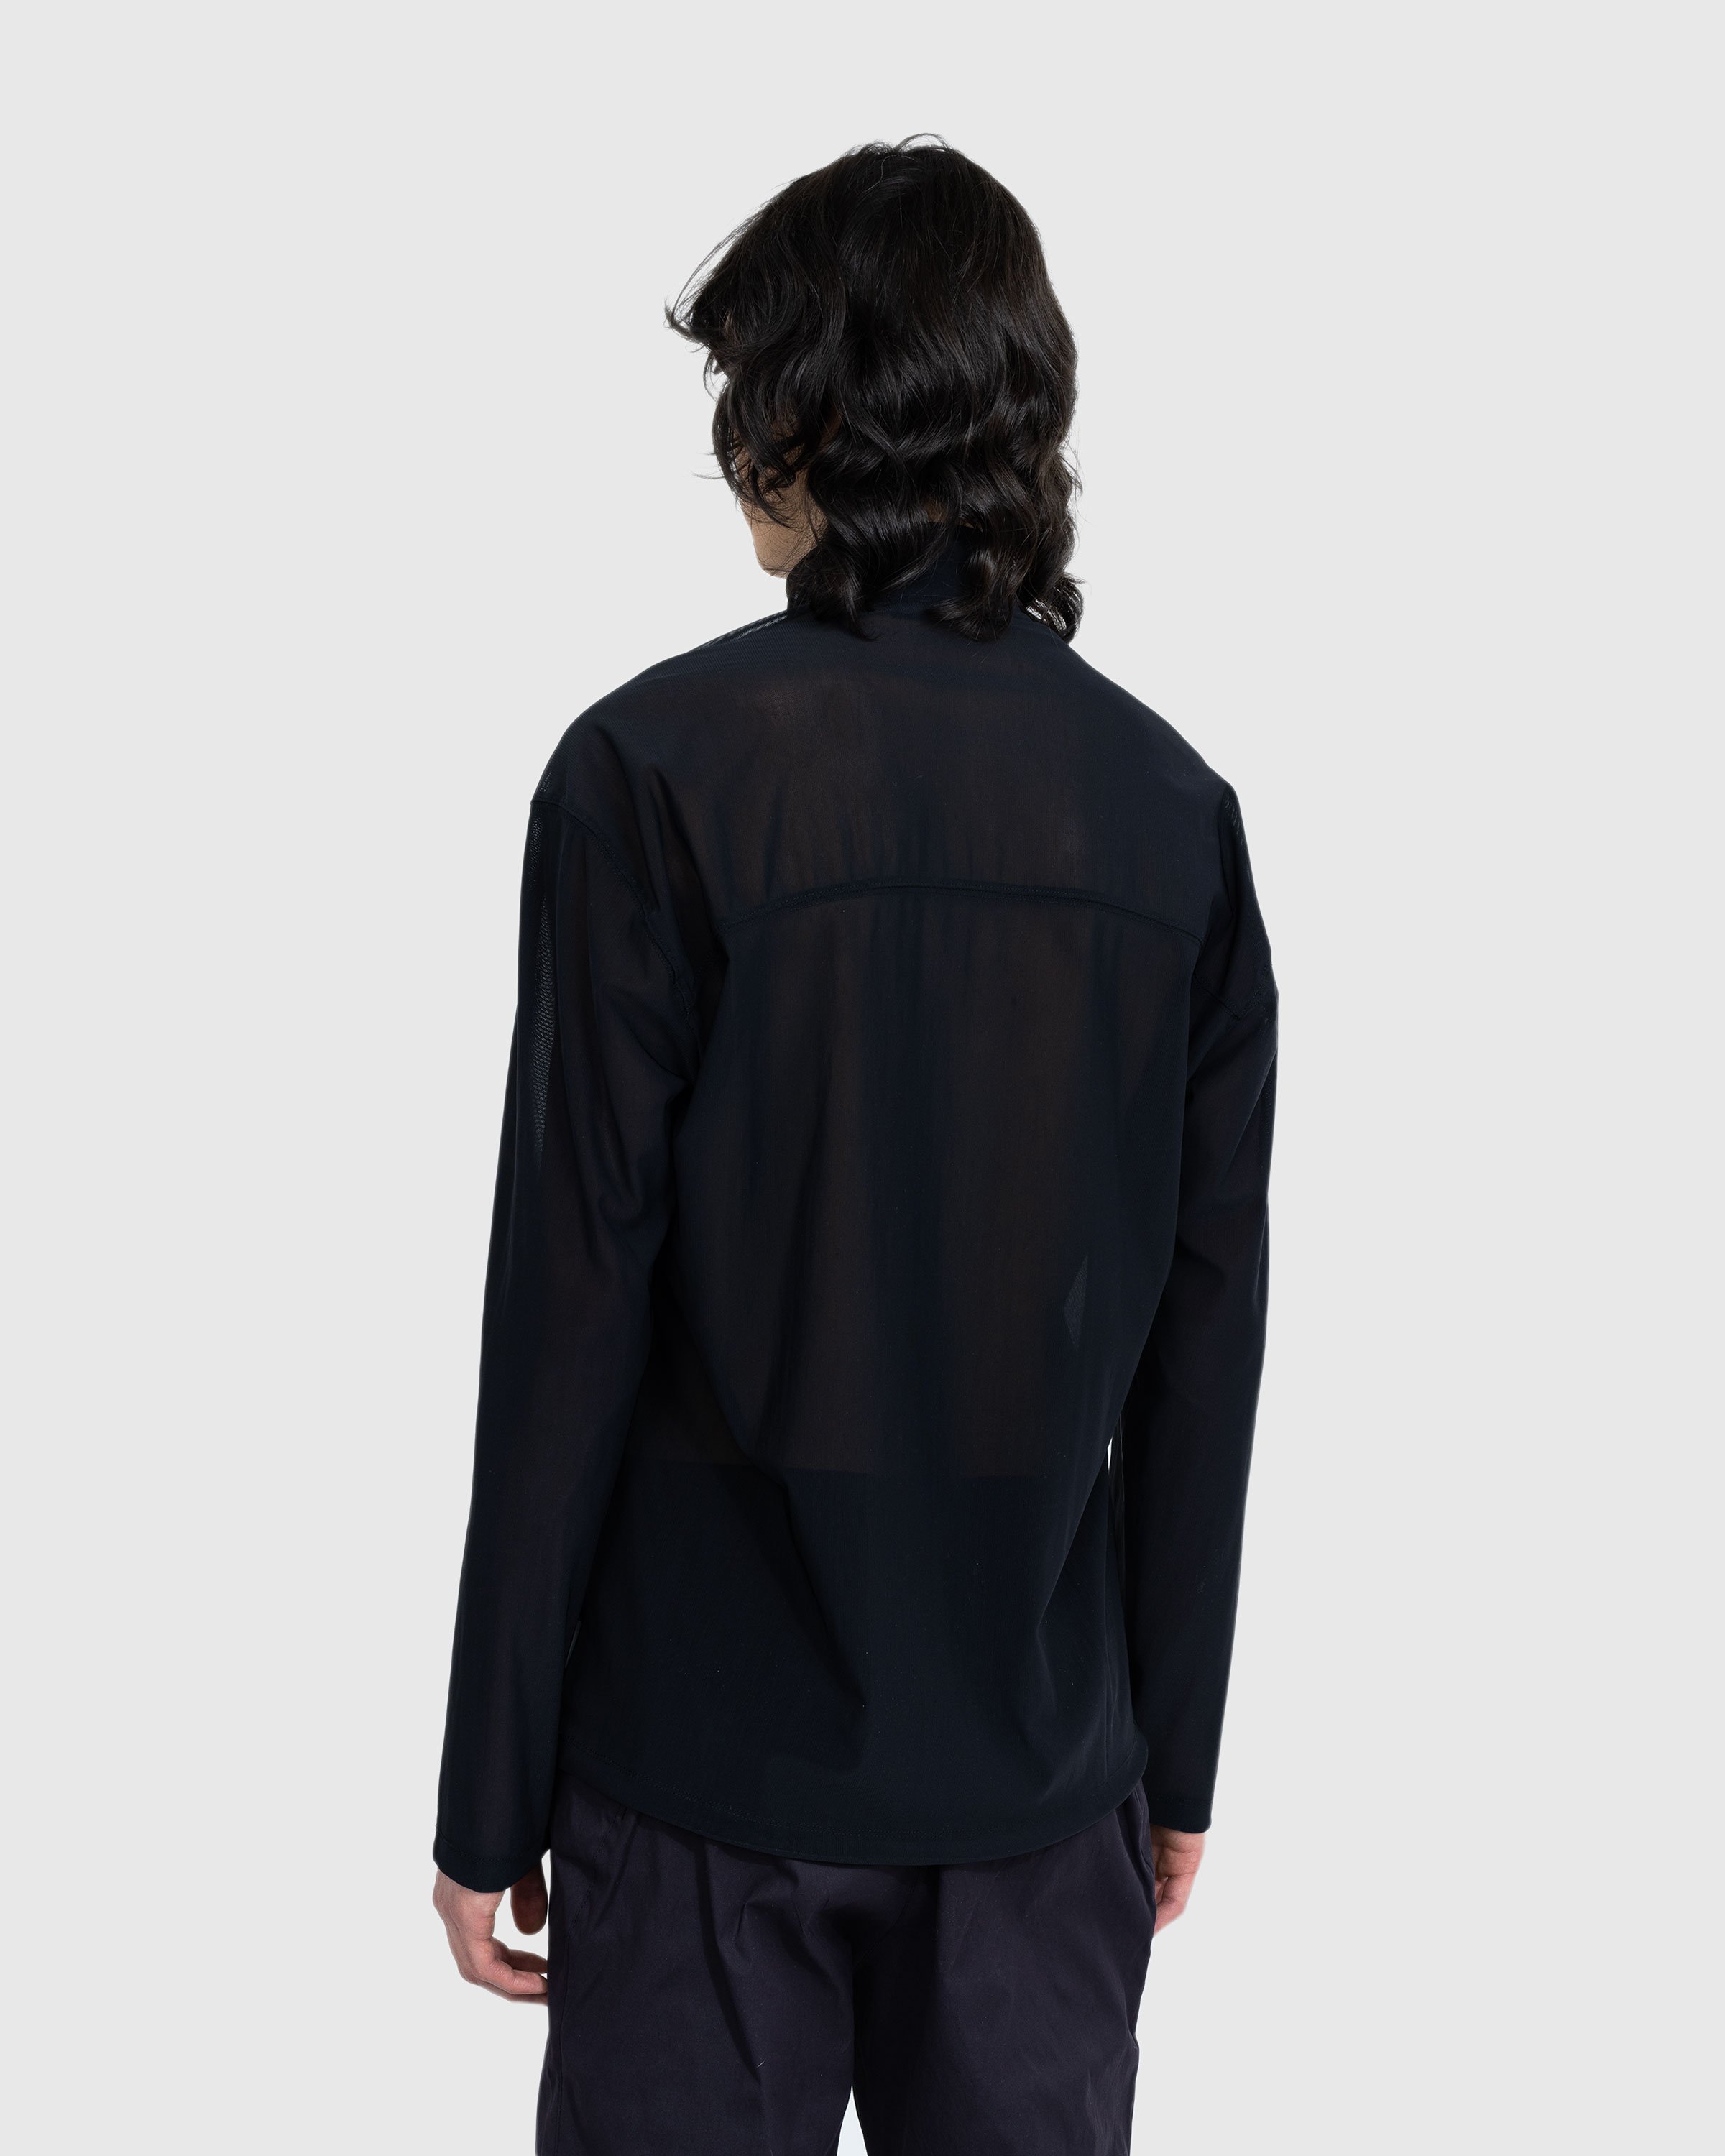 AFFXWRKS - Transit Mesh Pullover Black - Clothing - Black - Image 4